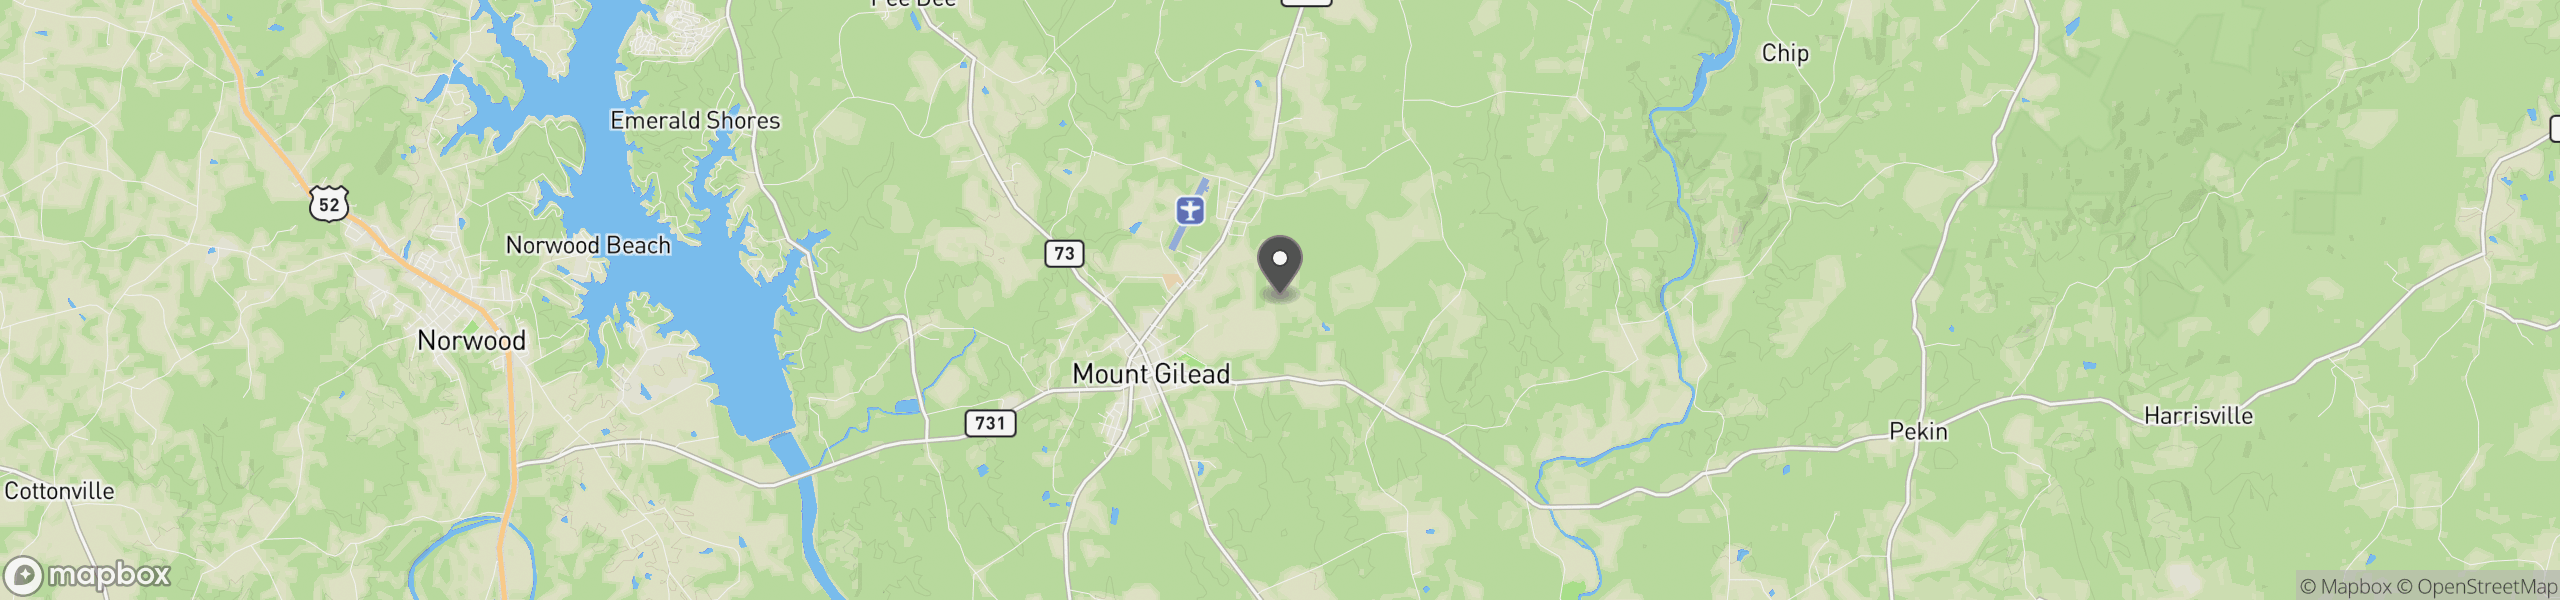 Mount Gilead, NC